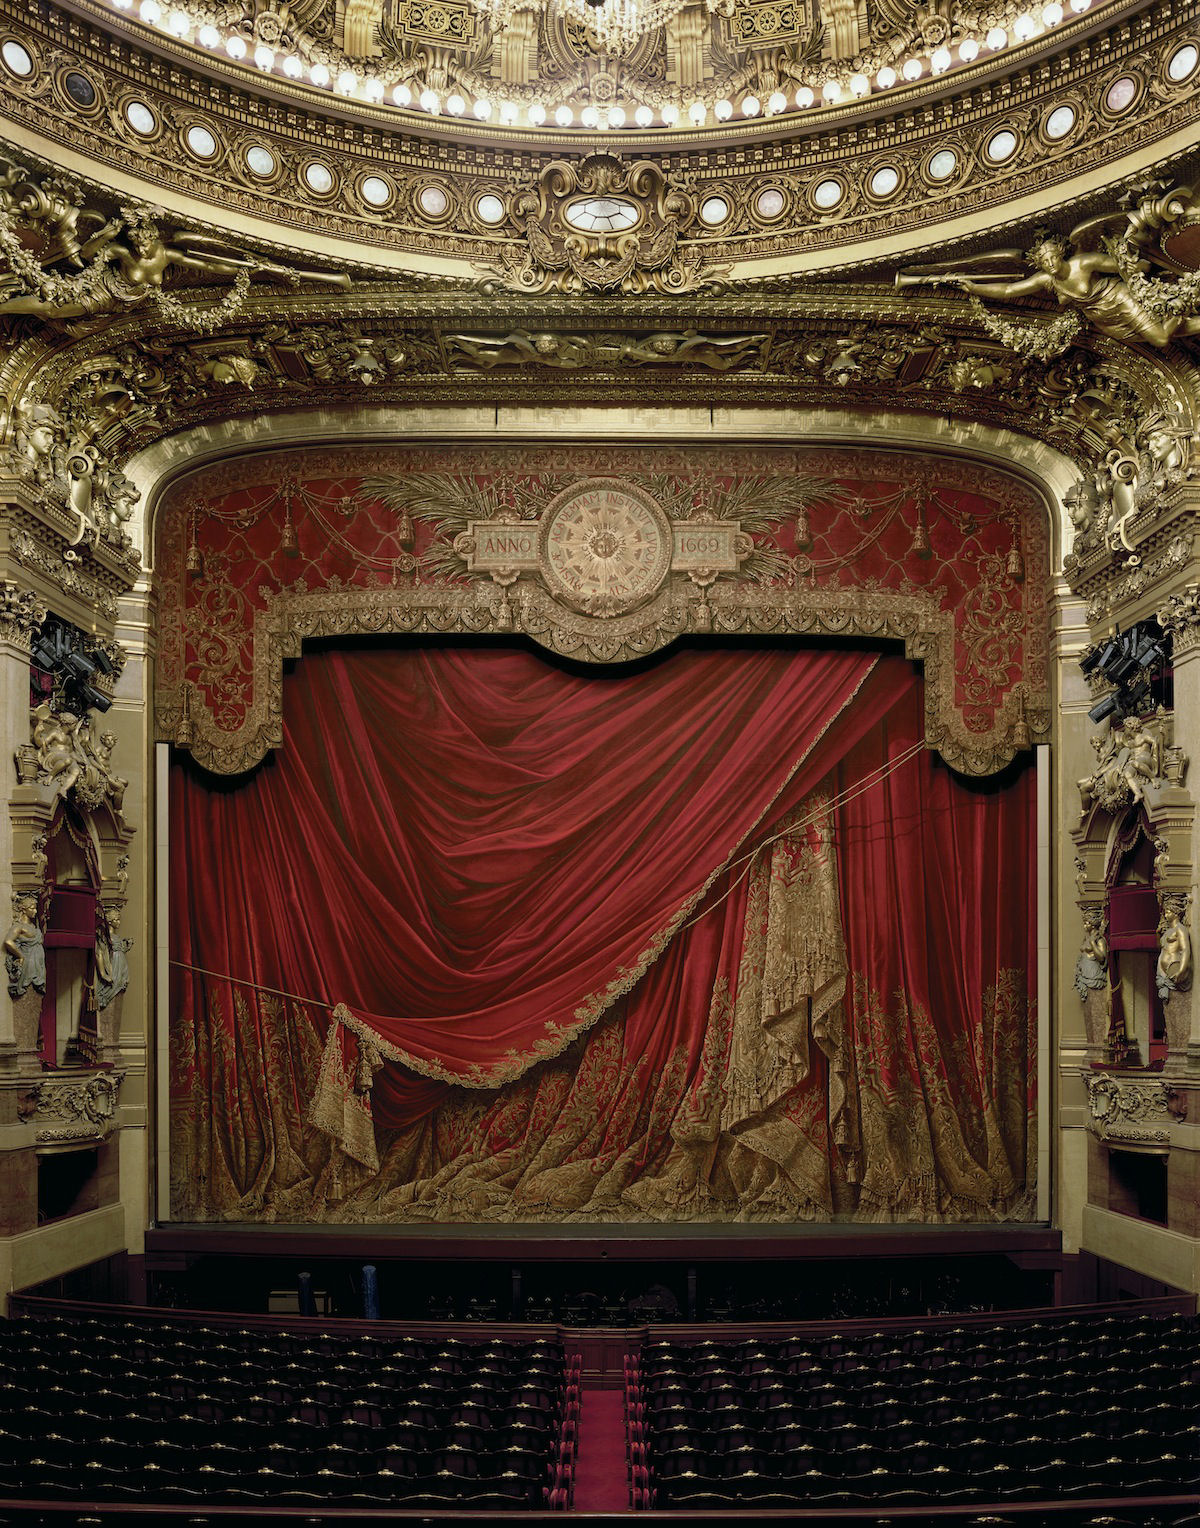 Fotografias de grande formato capturam ornamentada casas de ópera de todo o mundo 03